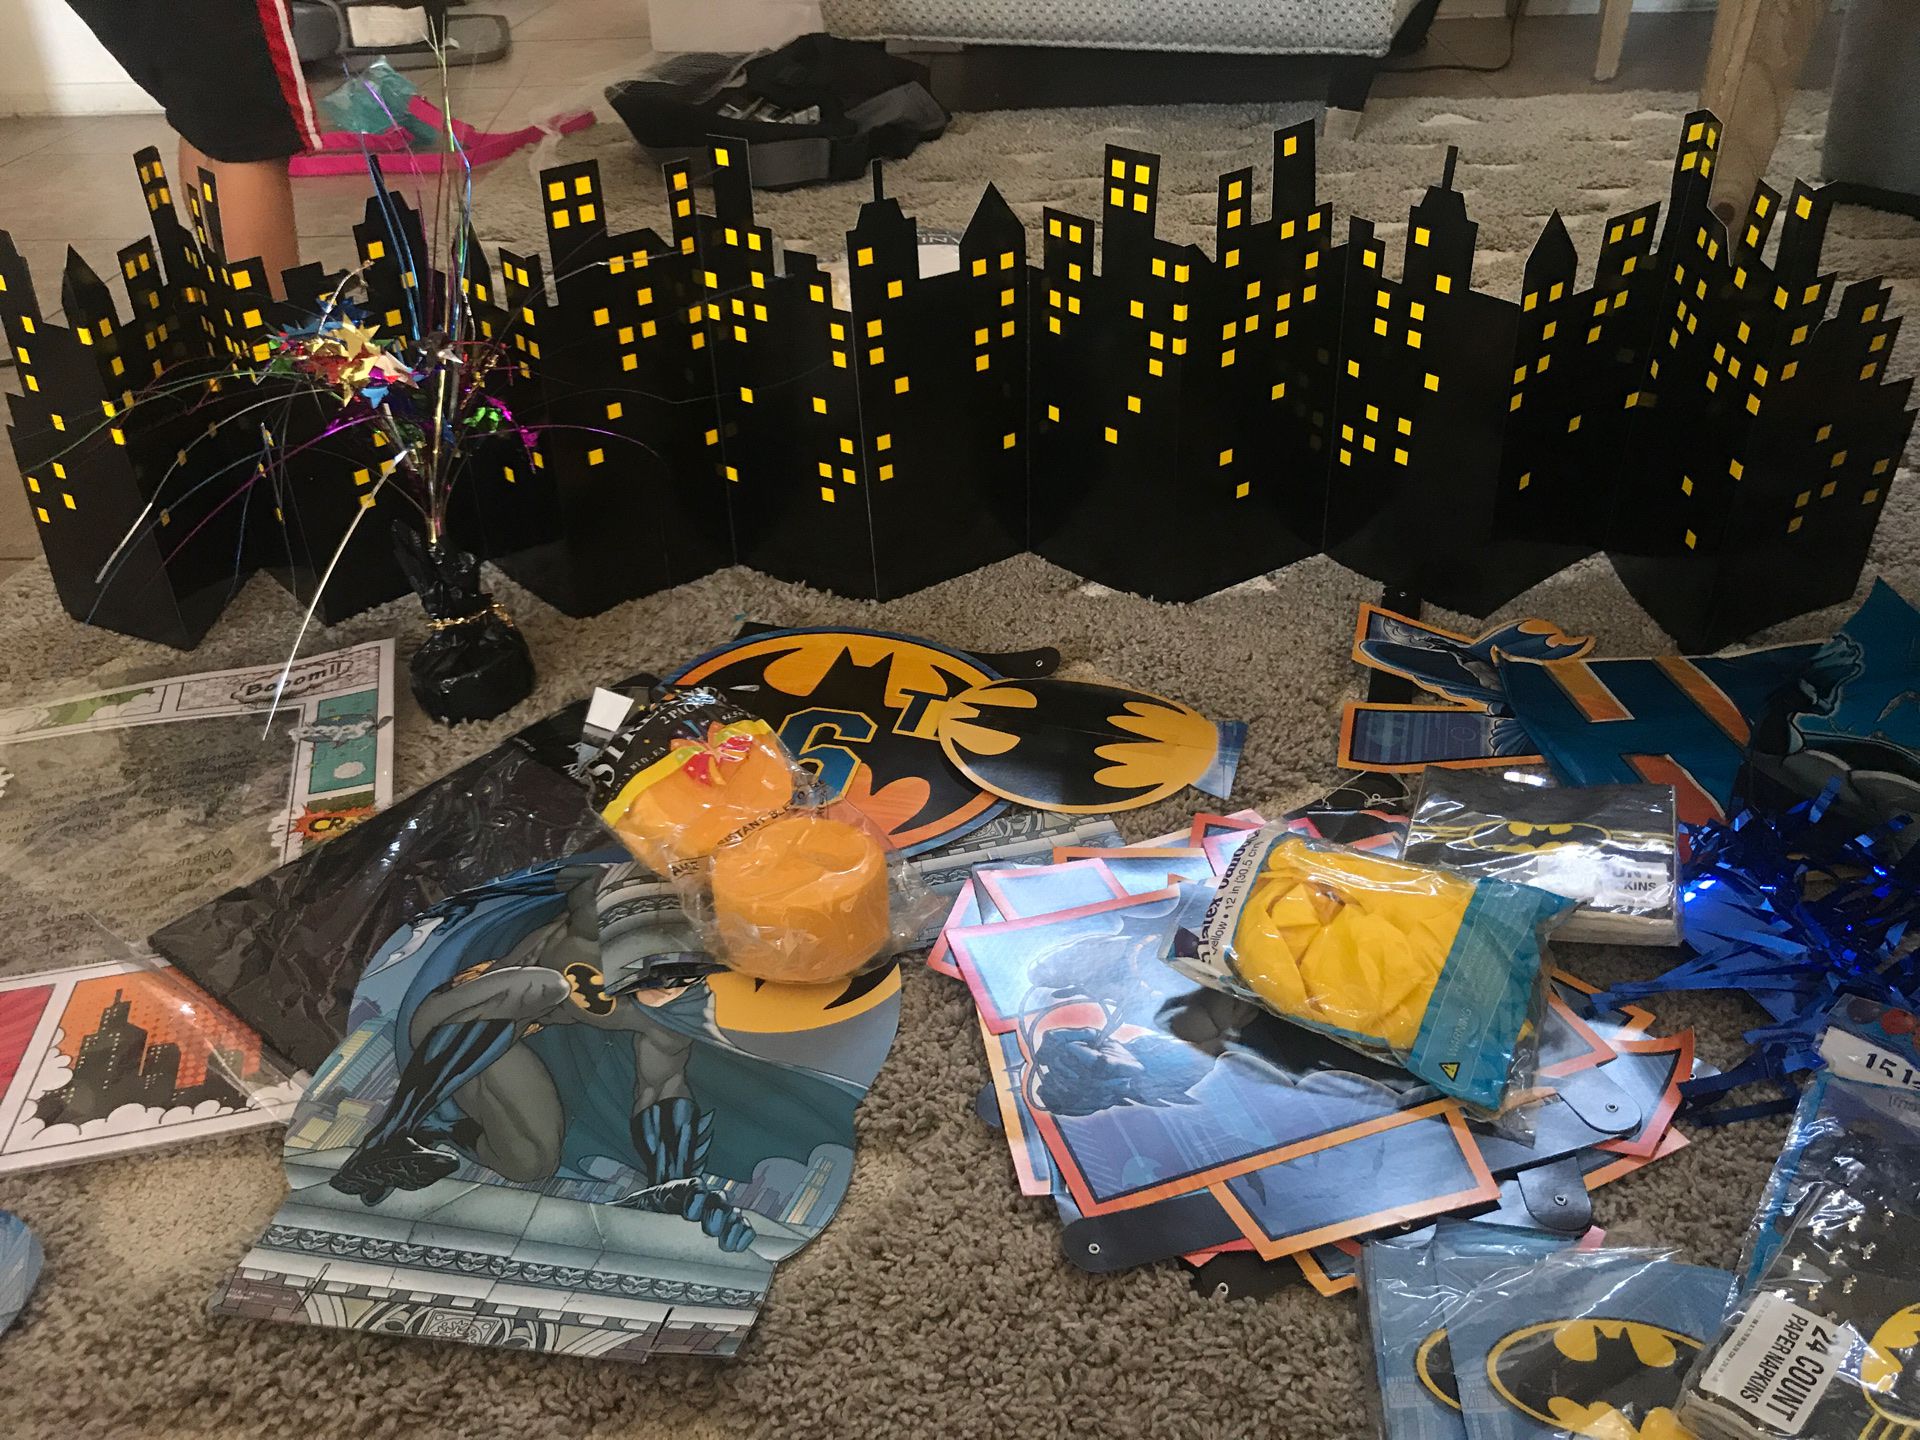 Batman decorations